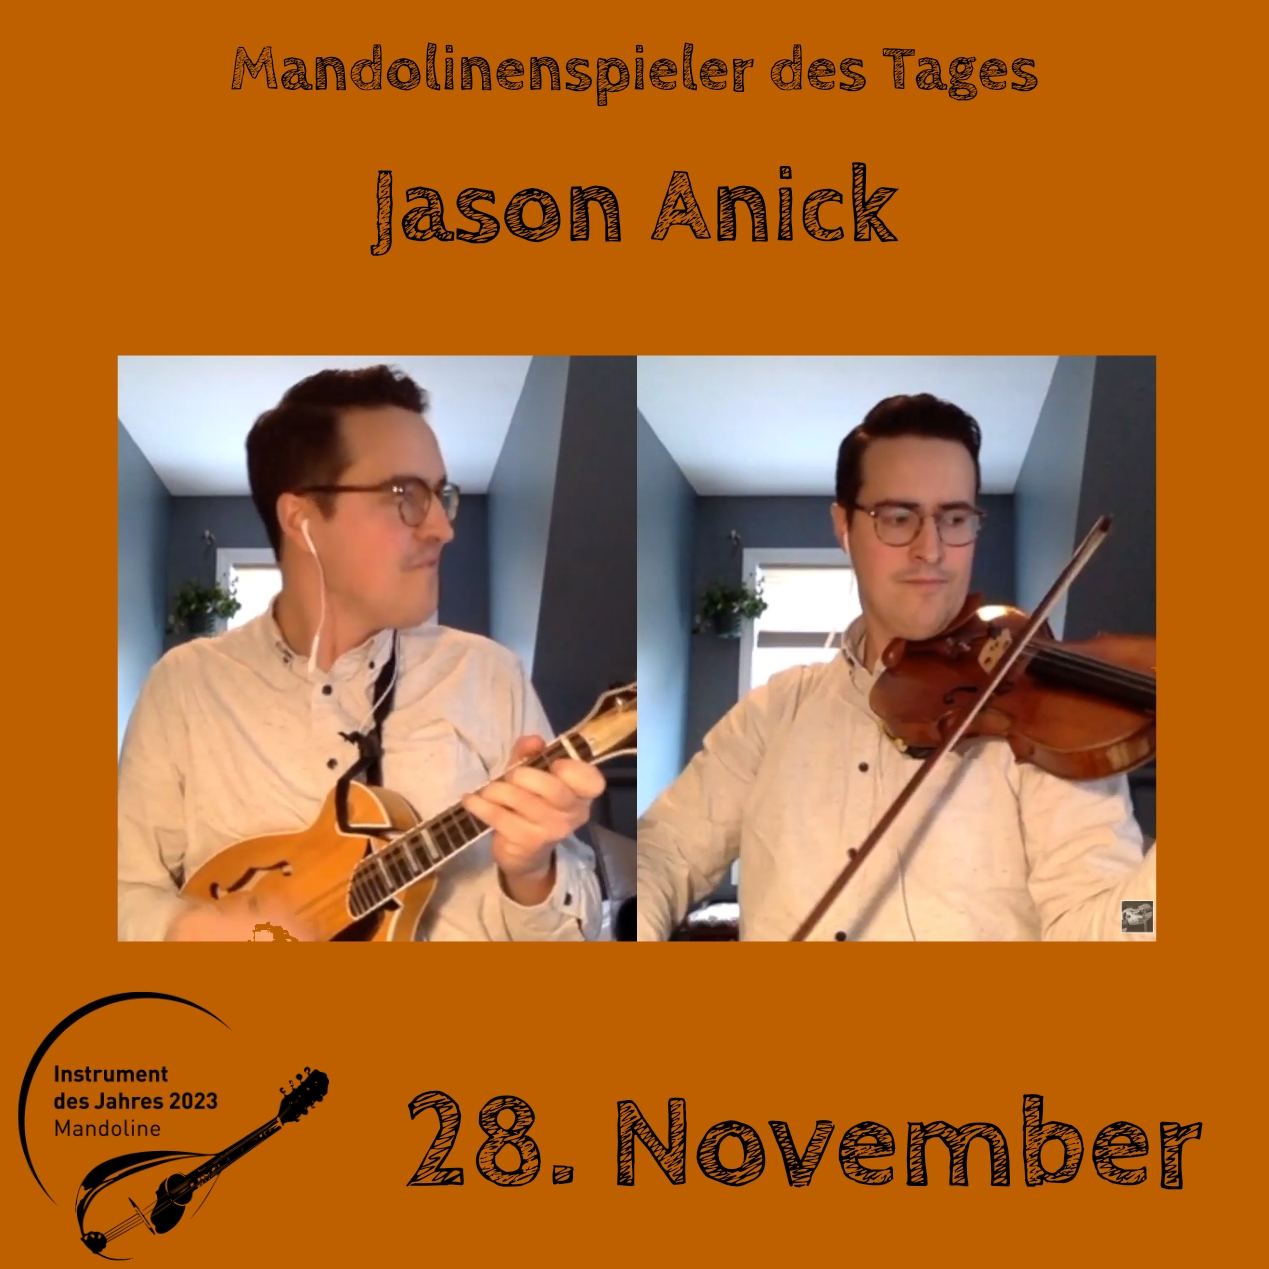 Jason Anick Mandolinenspielerin Mandolinenspieler des Tages Mandoline Instrument des Jahres 2023